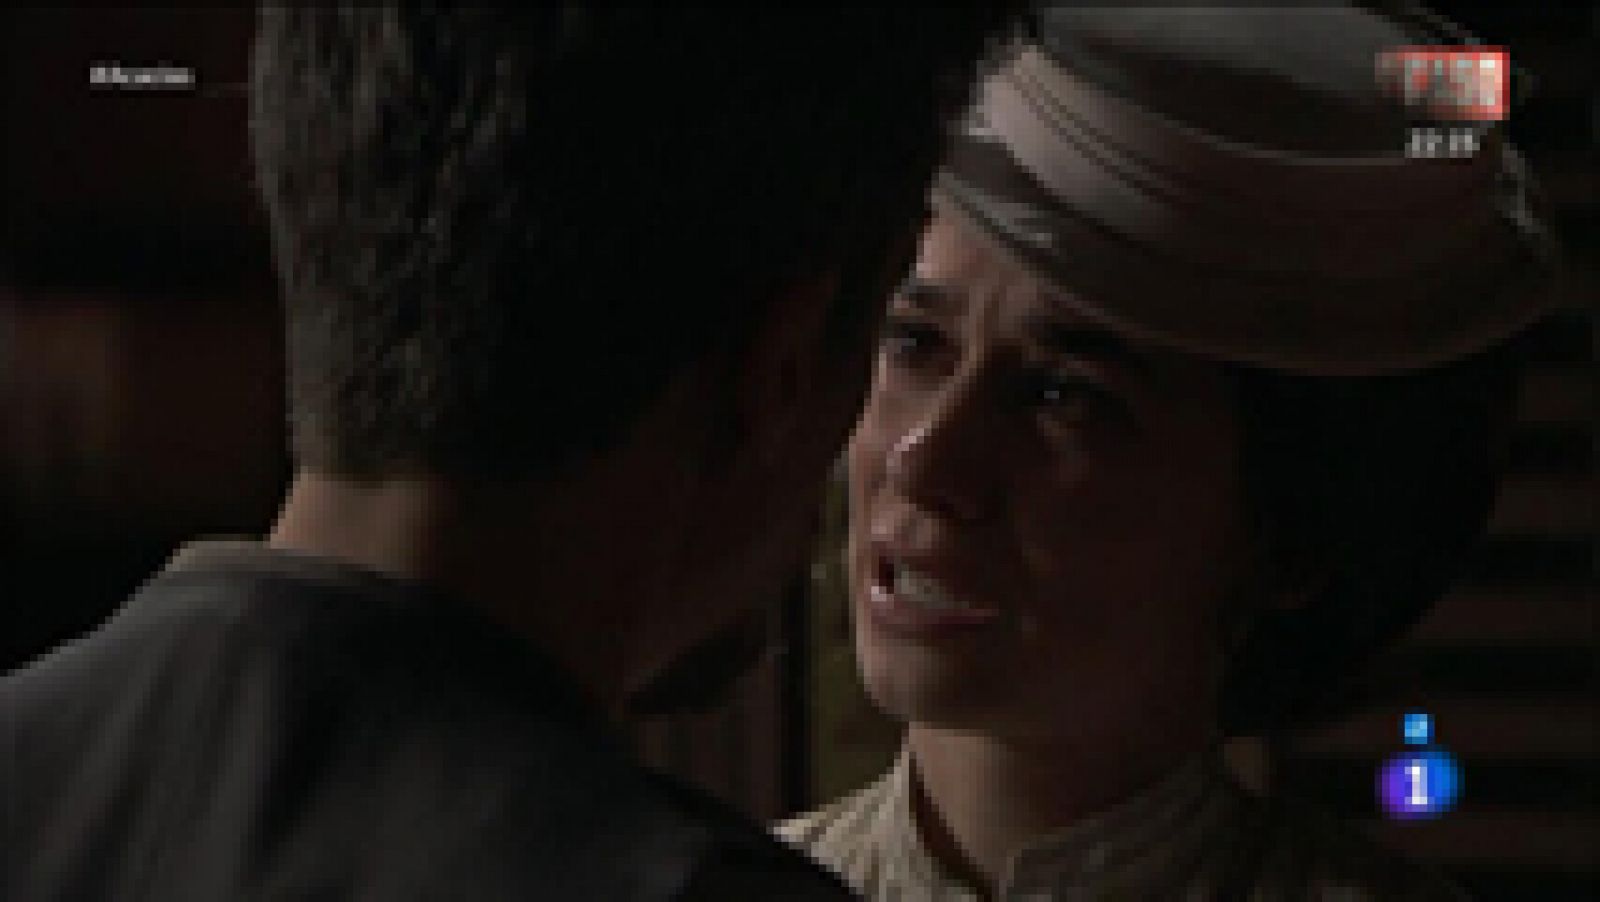 Acacias 38 - Teresa le pide a Mauro que se olviden el uno del otro